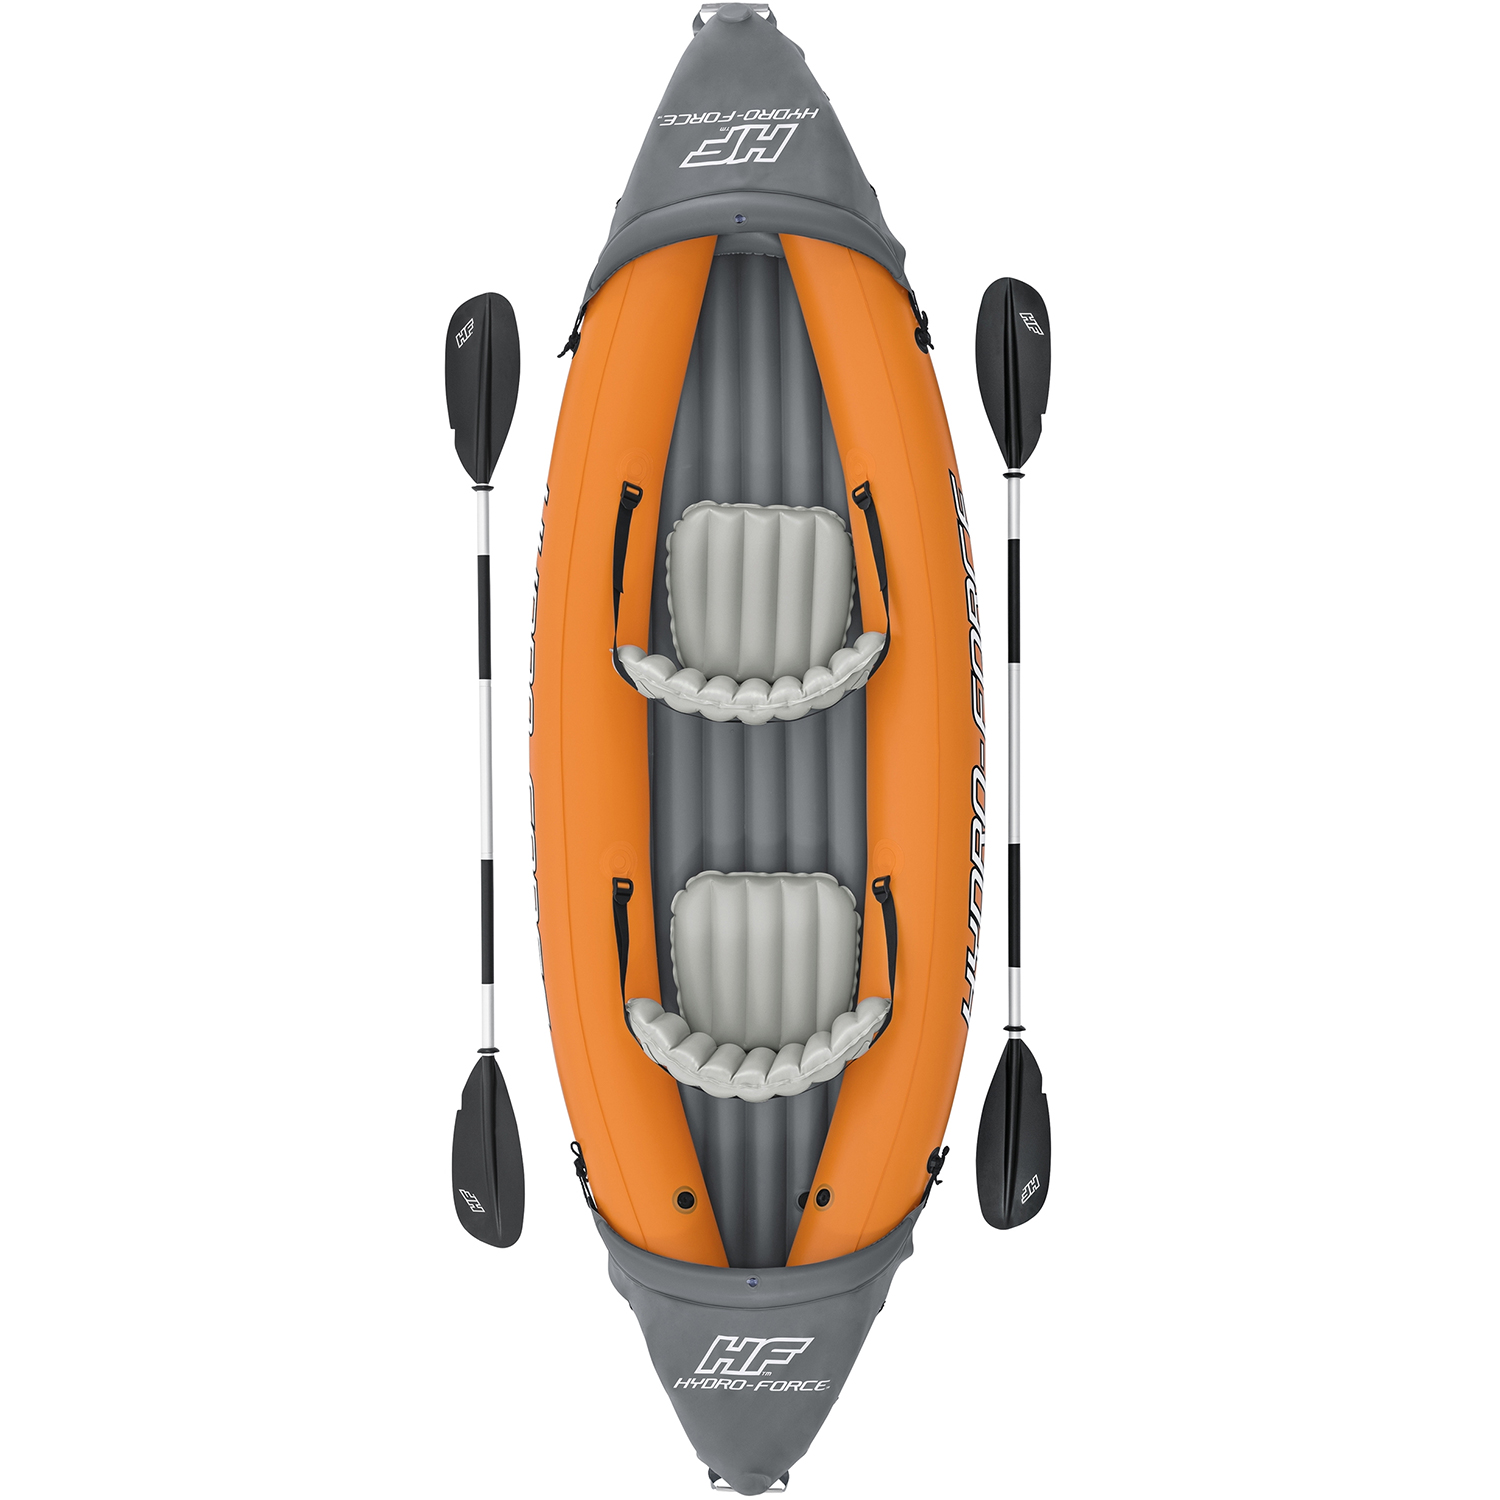 Bestway Hydro force kayak Lite-rapid X2